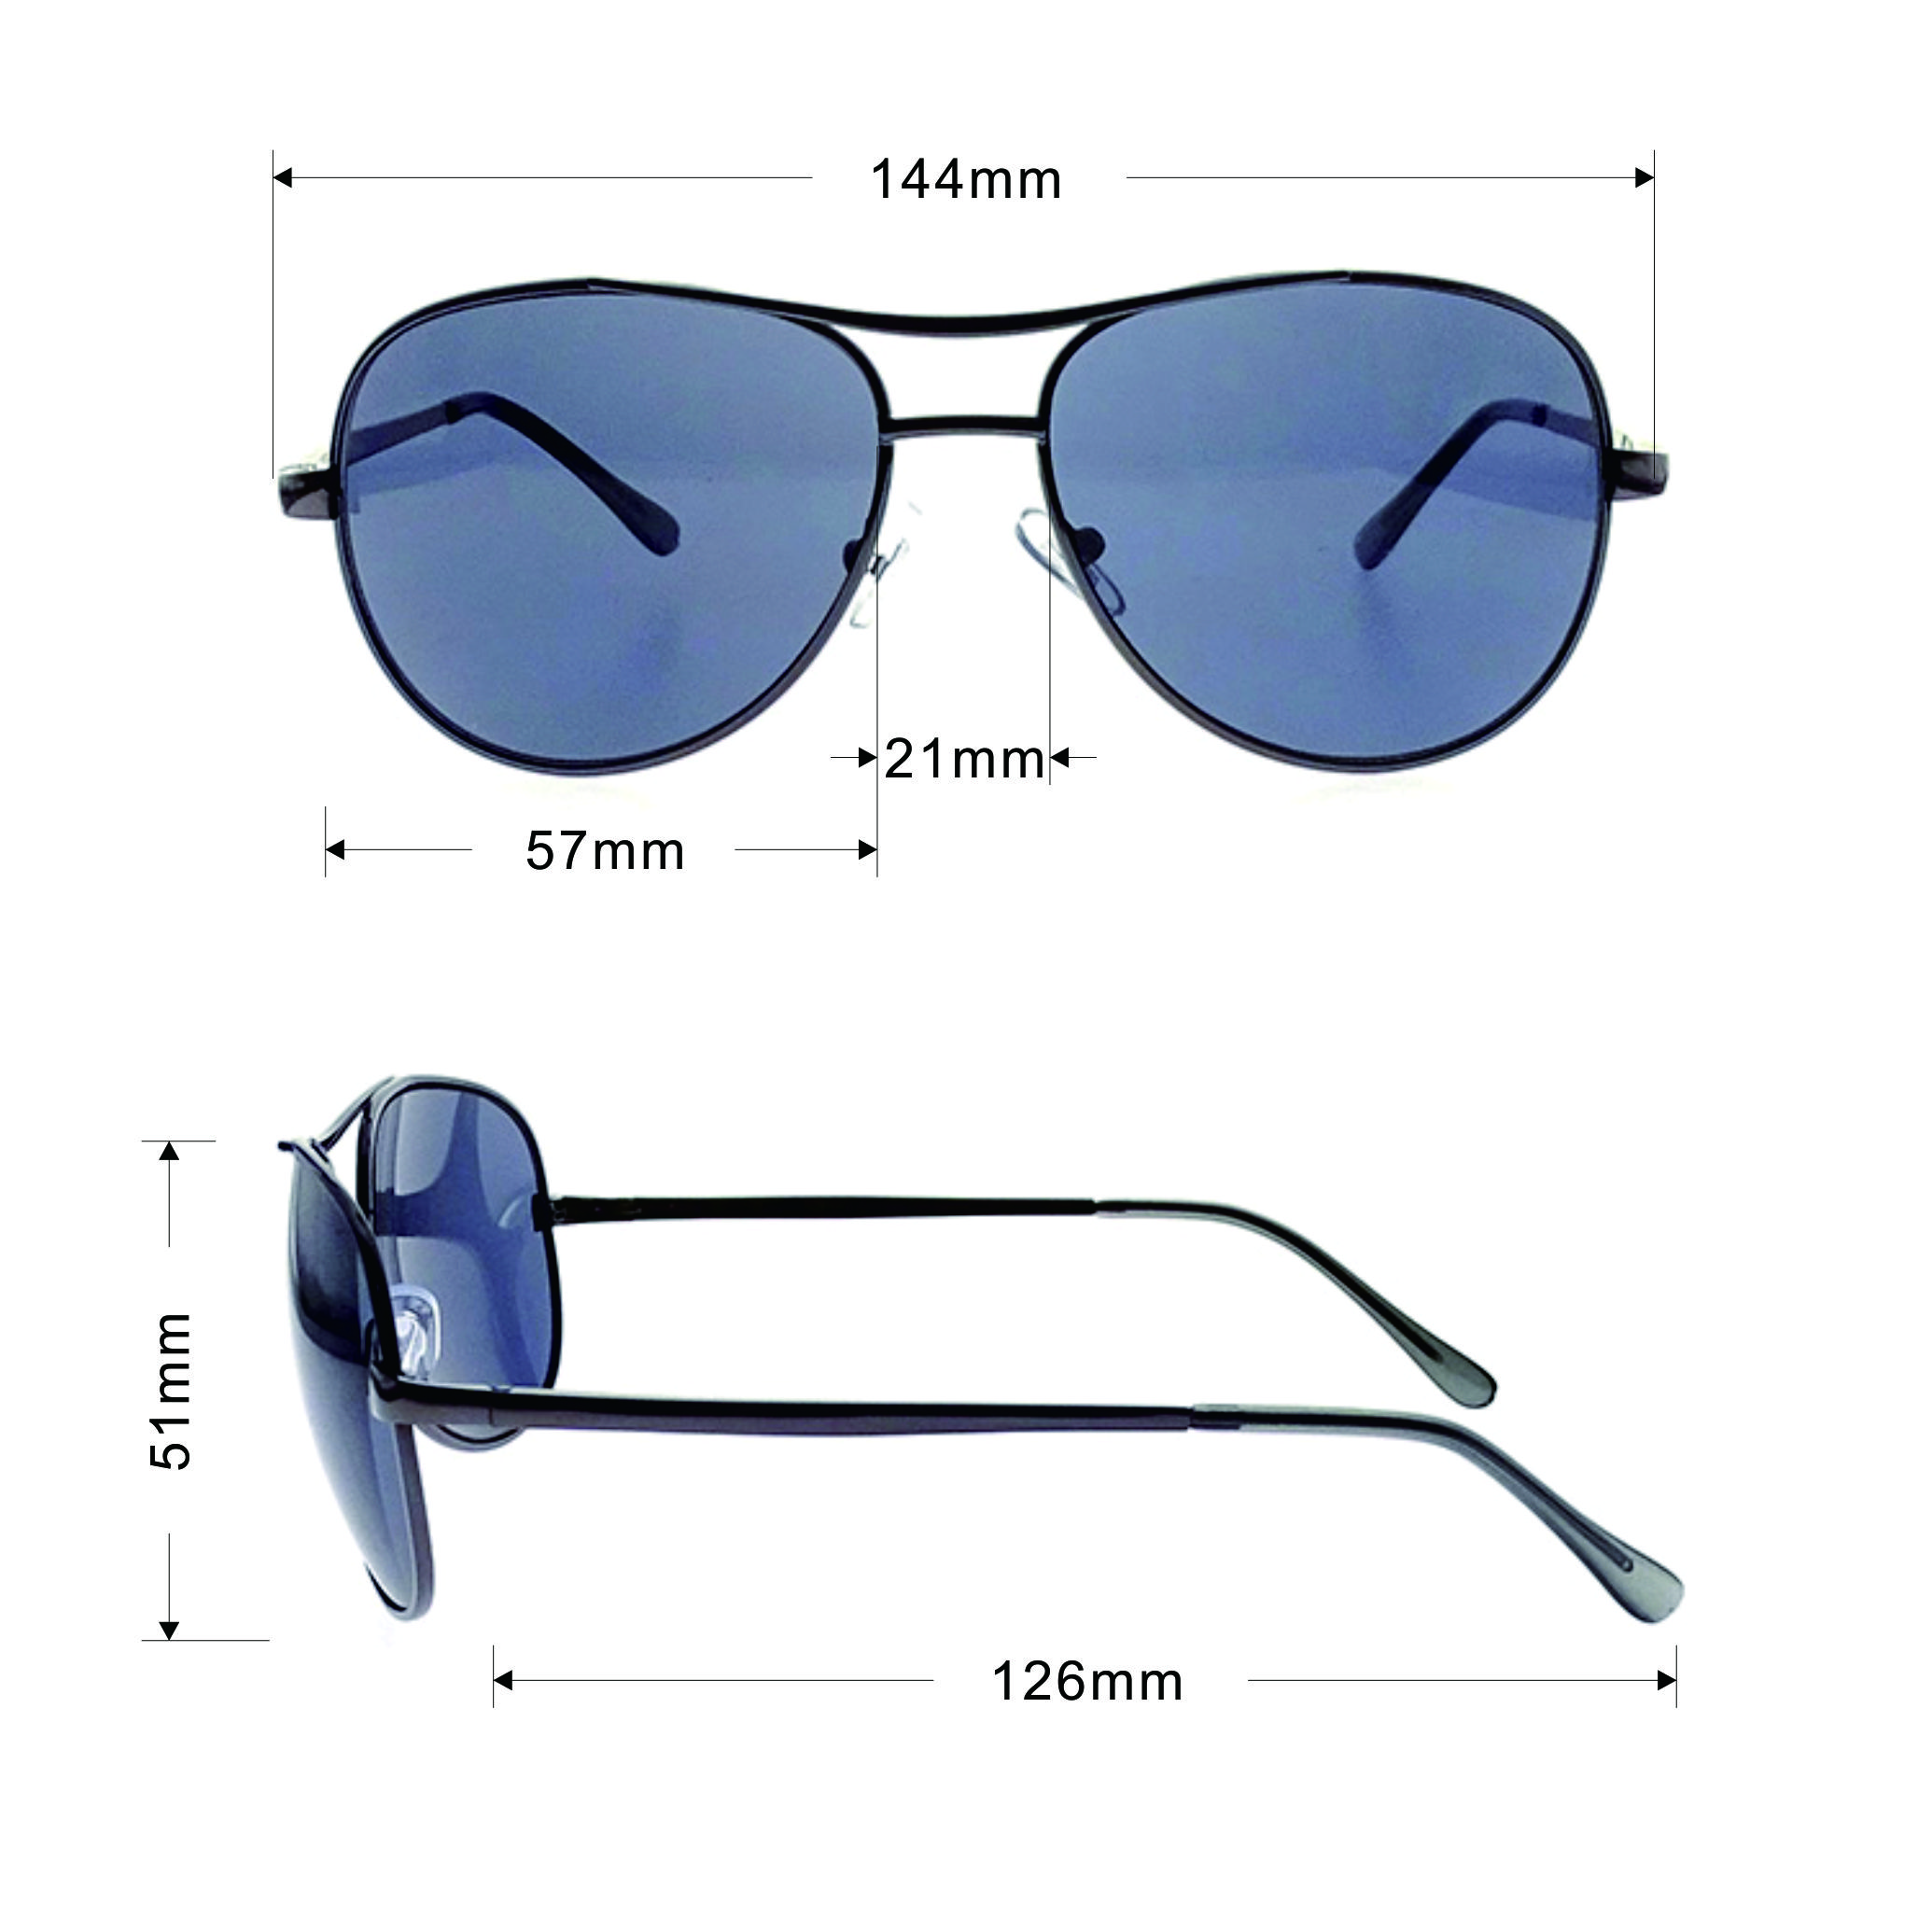 Gafas de sol de moda negro Unisex Gafas de sol Aviator EXCEDIVE LS-M294